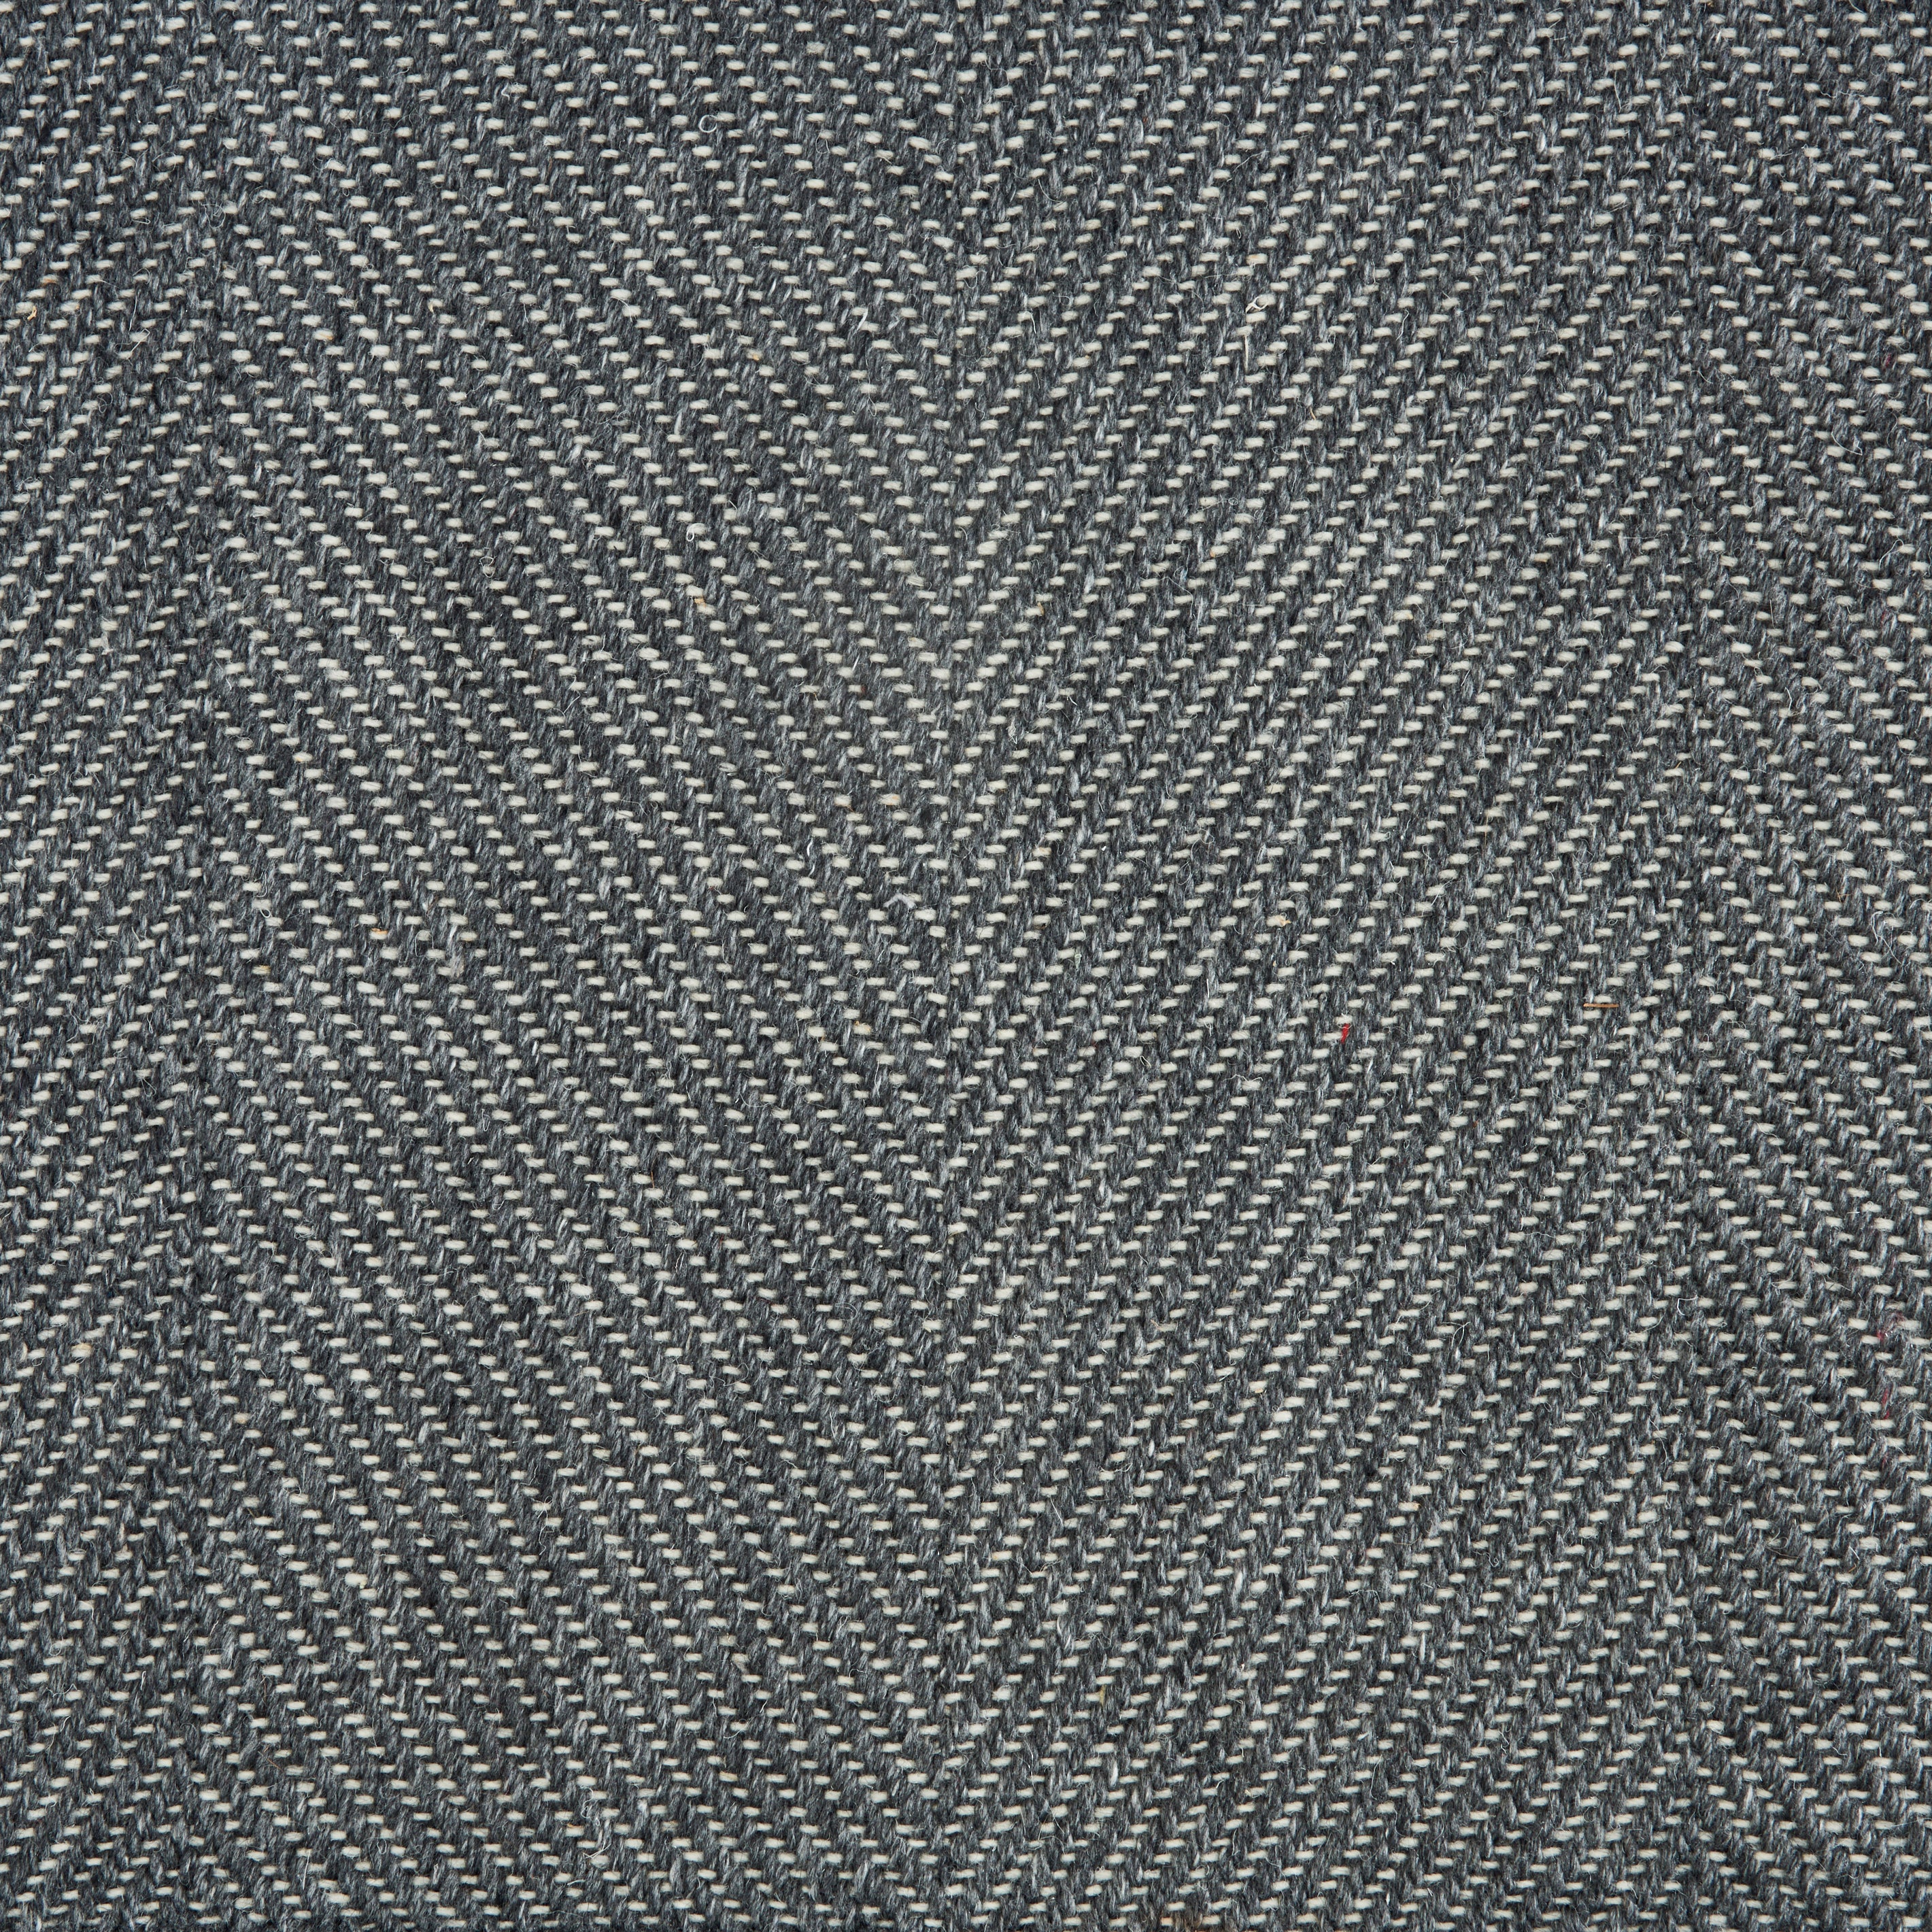 Wool-blend broadloom carpet swatch in a flat herringbone weave in mottled charcoal.